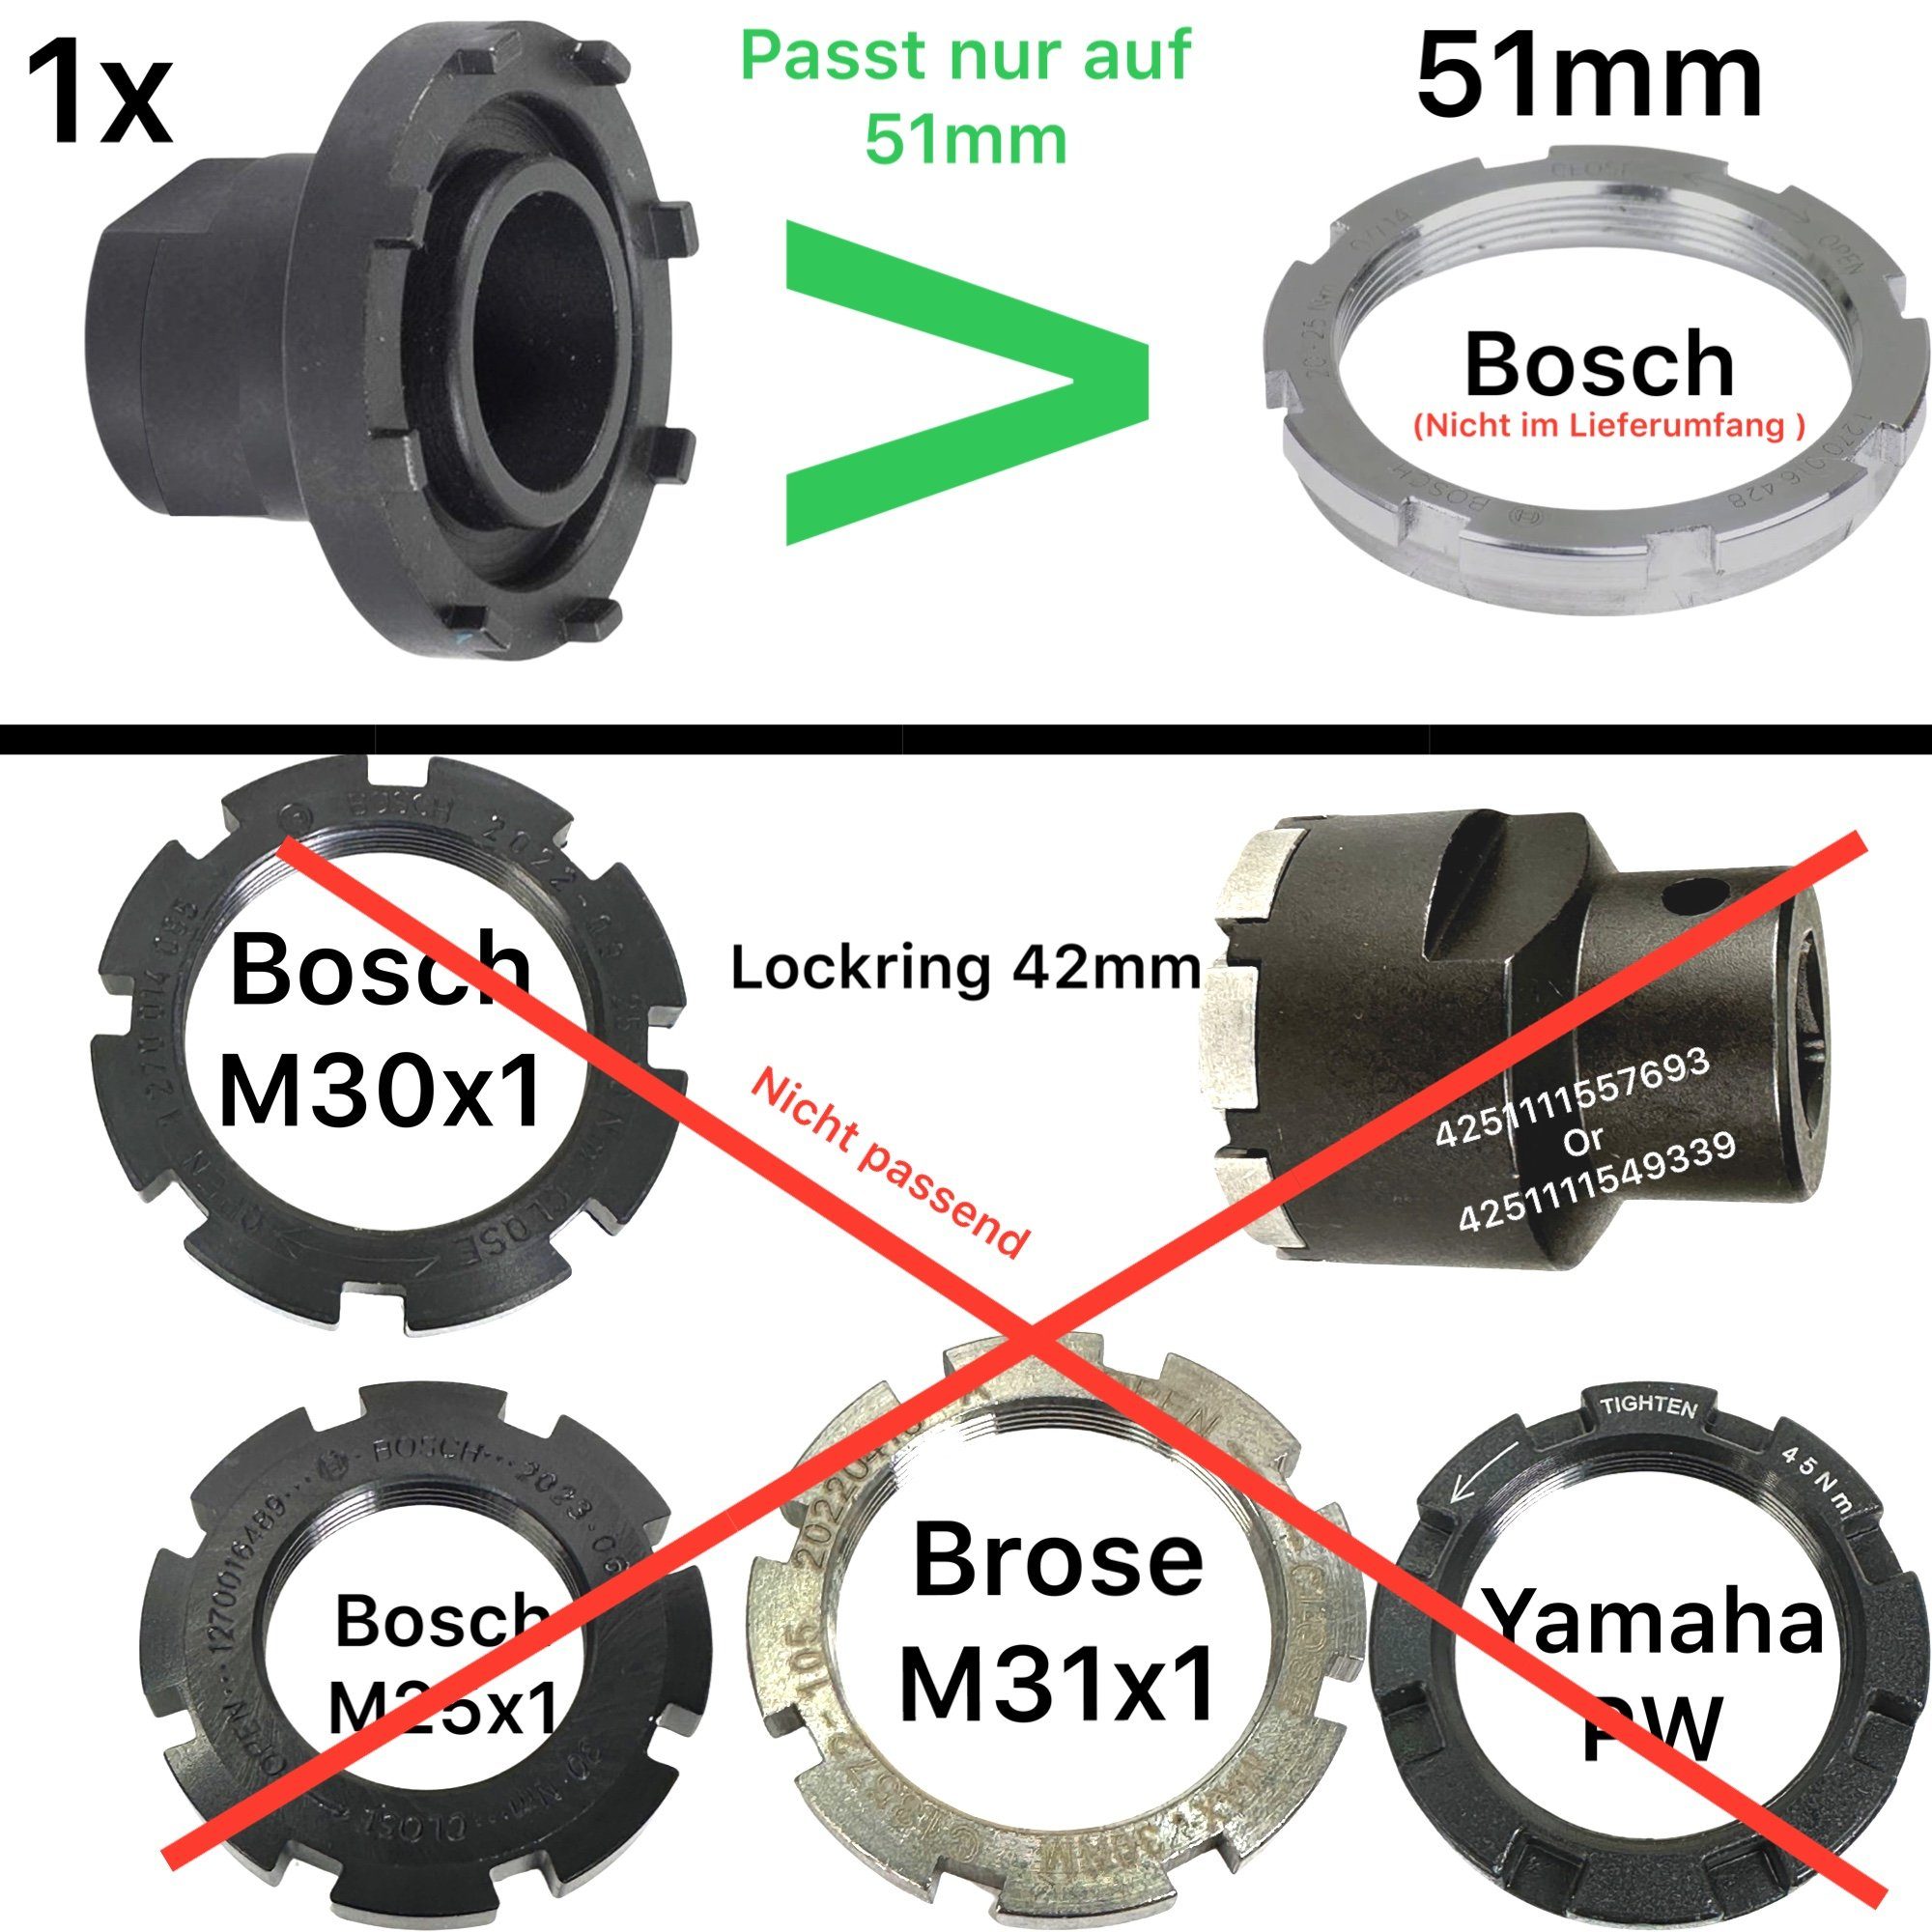 für Fahrrad-Montageständer Bosch F26 51mm Lockringtool Performance Ebike Motor Kettenblatt Active